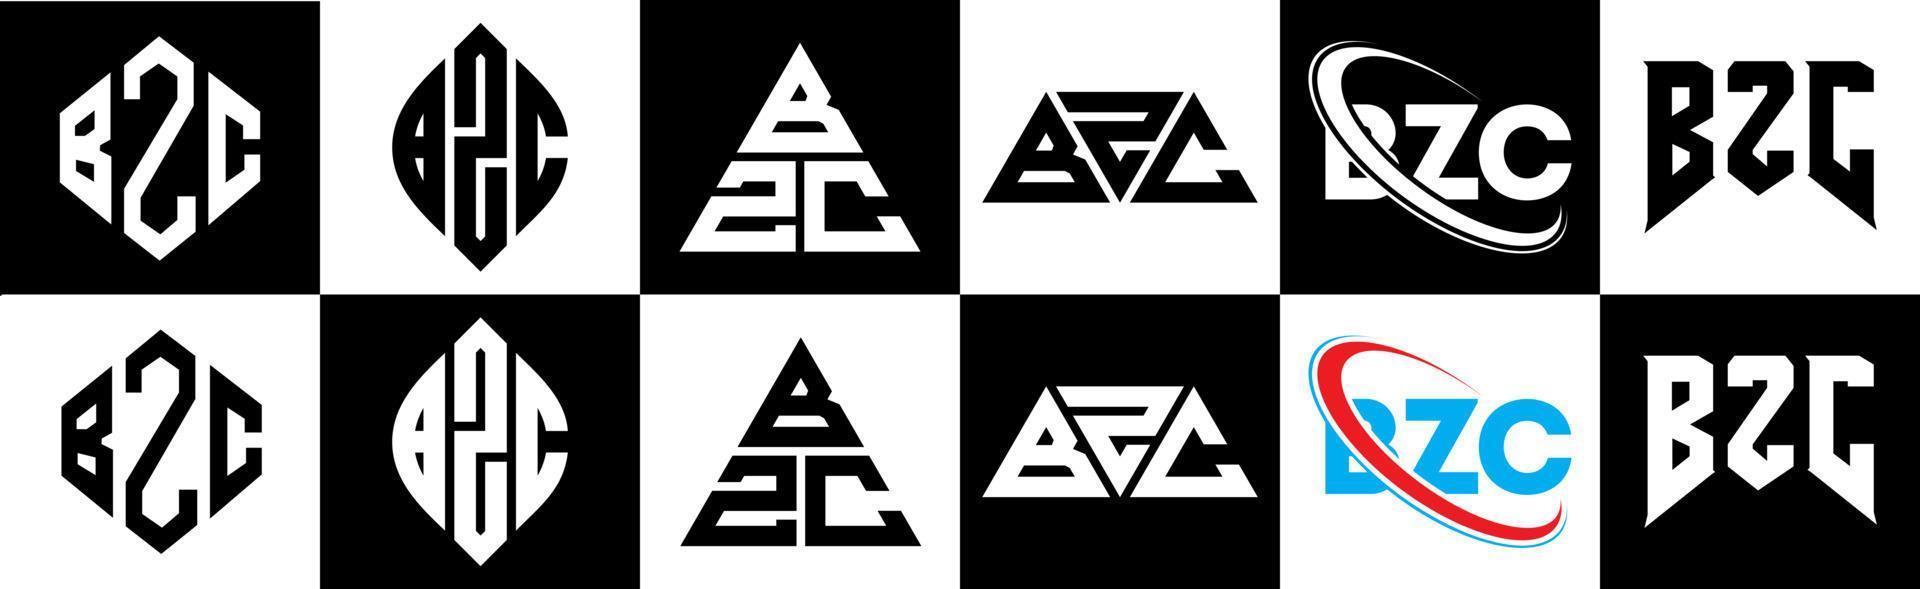 Diseño de logotipo de letra bzc en seis estilos. polígono bzc, círculo, triángulo, hexágono, estilo plano y simple con logotipo de letra de variación de color blanco y negro en una mesa de trabajo. logotipo bzc minimalista y clásico vector